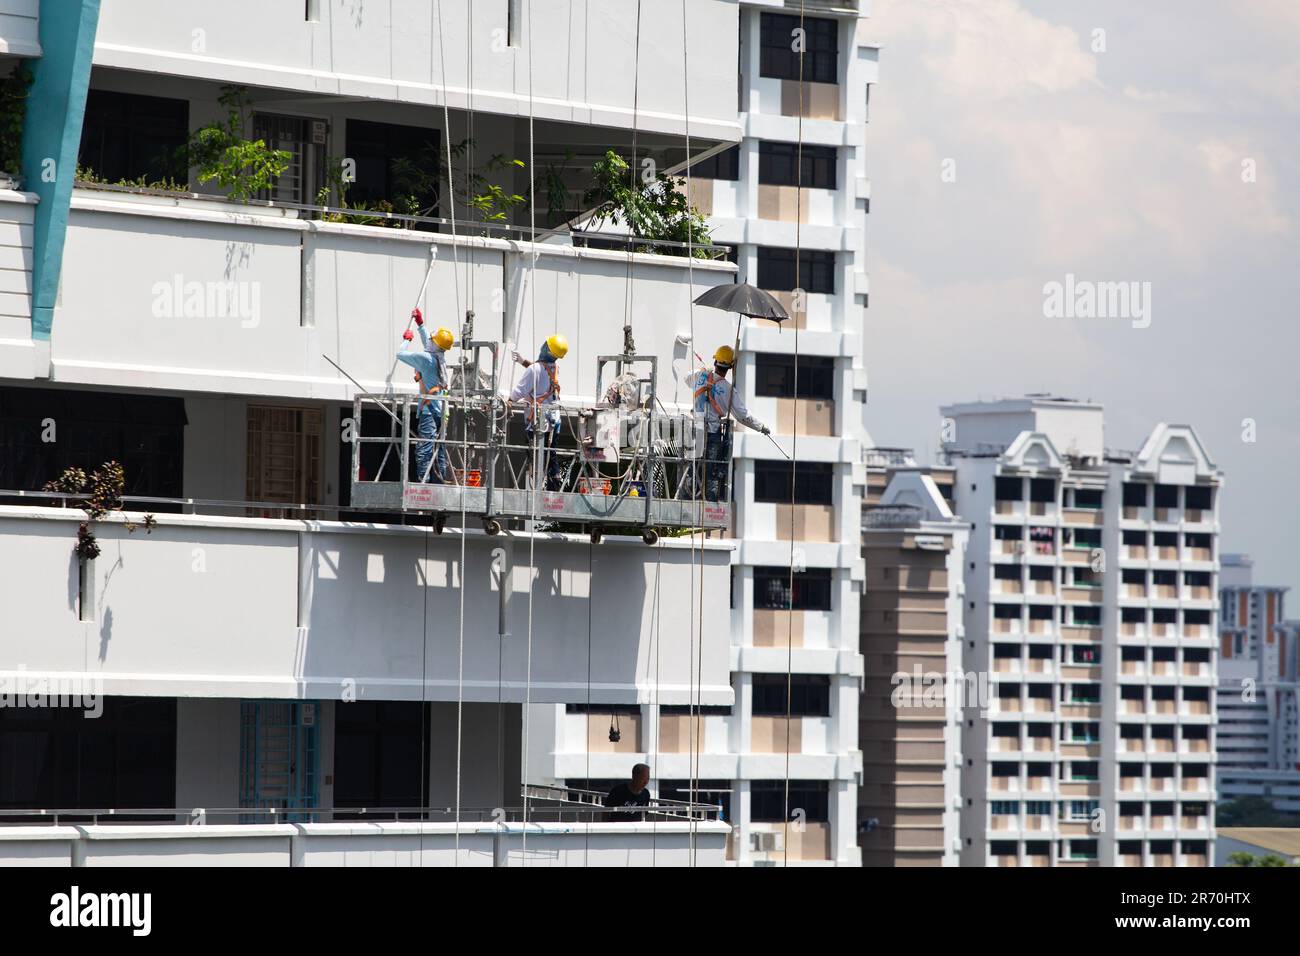 Les travailleurs utilisant un ascenseur industriel suspendu en plein air font un travail de peinture pour un bâtiment extérieur sous le soleil brûlant. Une profession à très haut risque. Banque D'Images